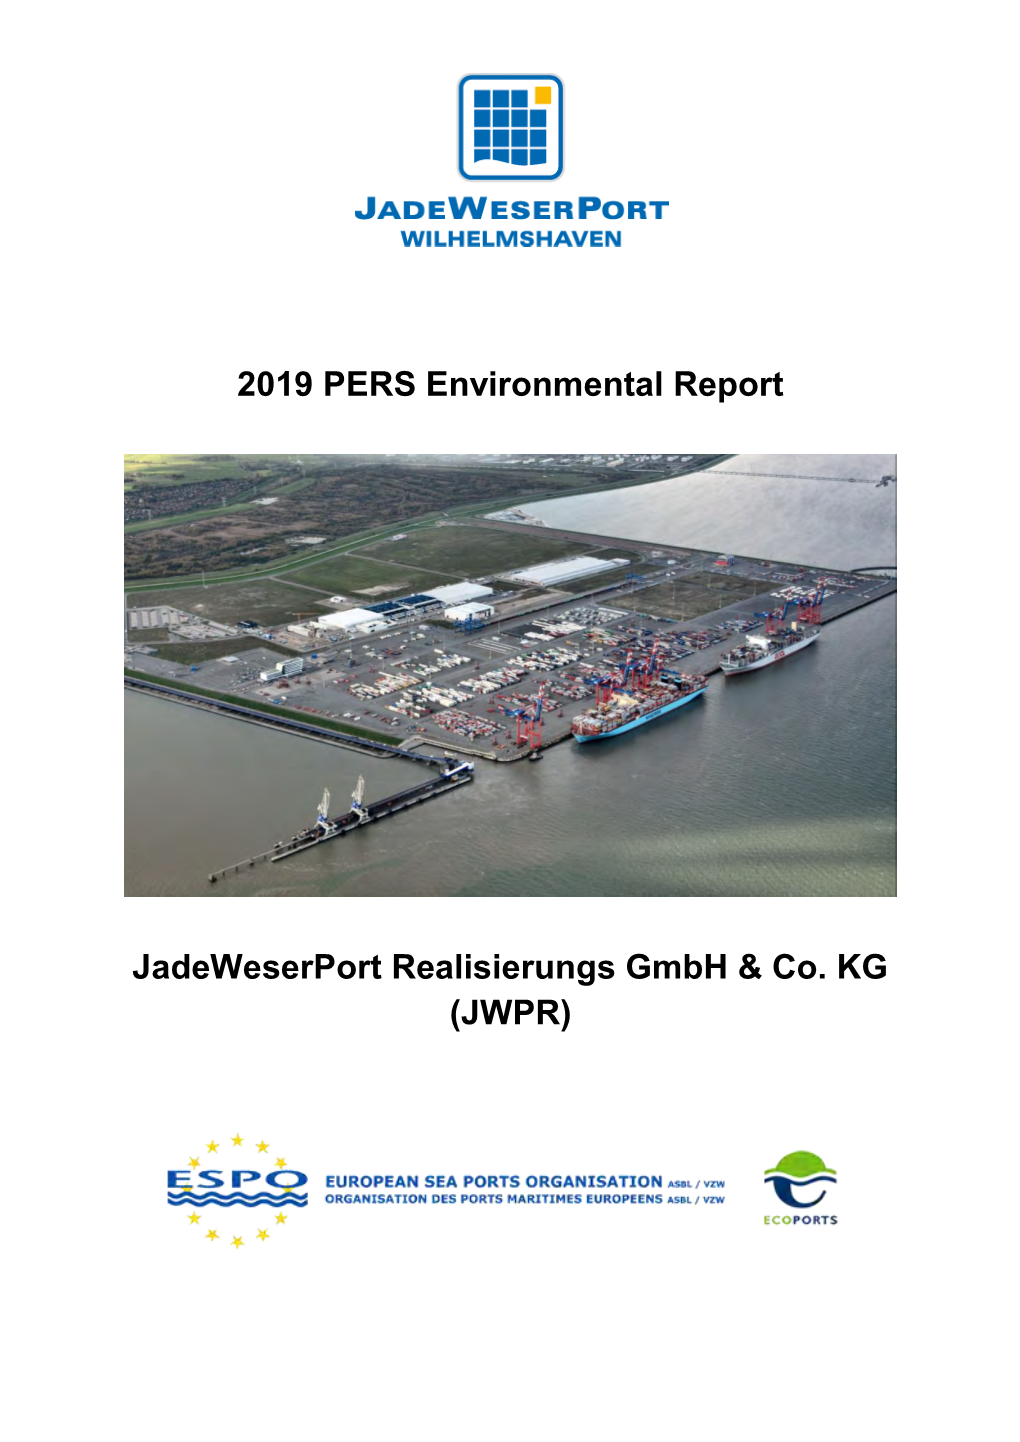 2019 Environmental Report